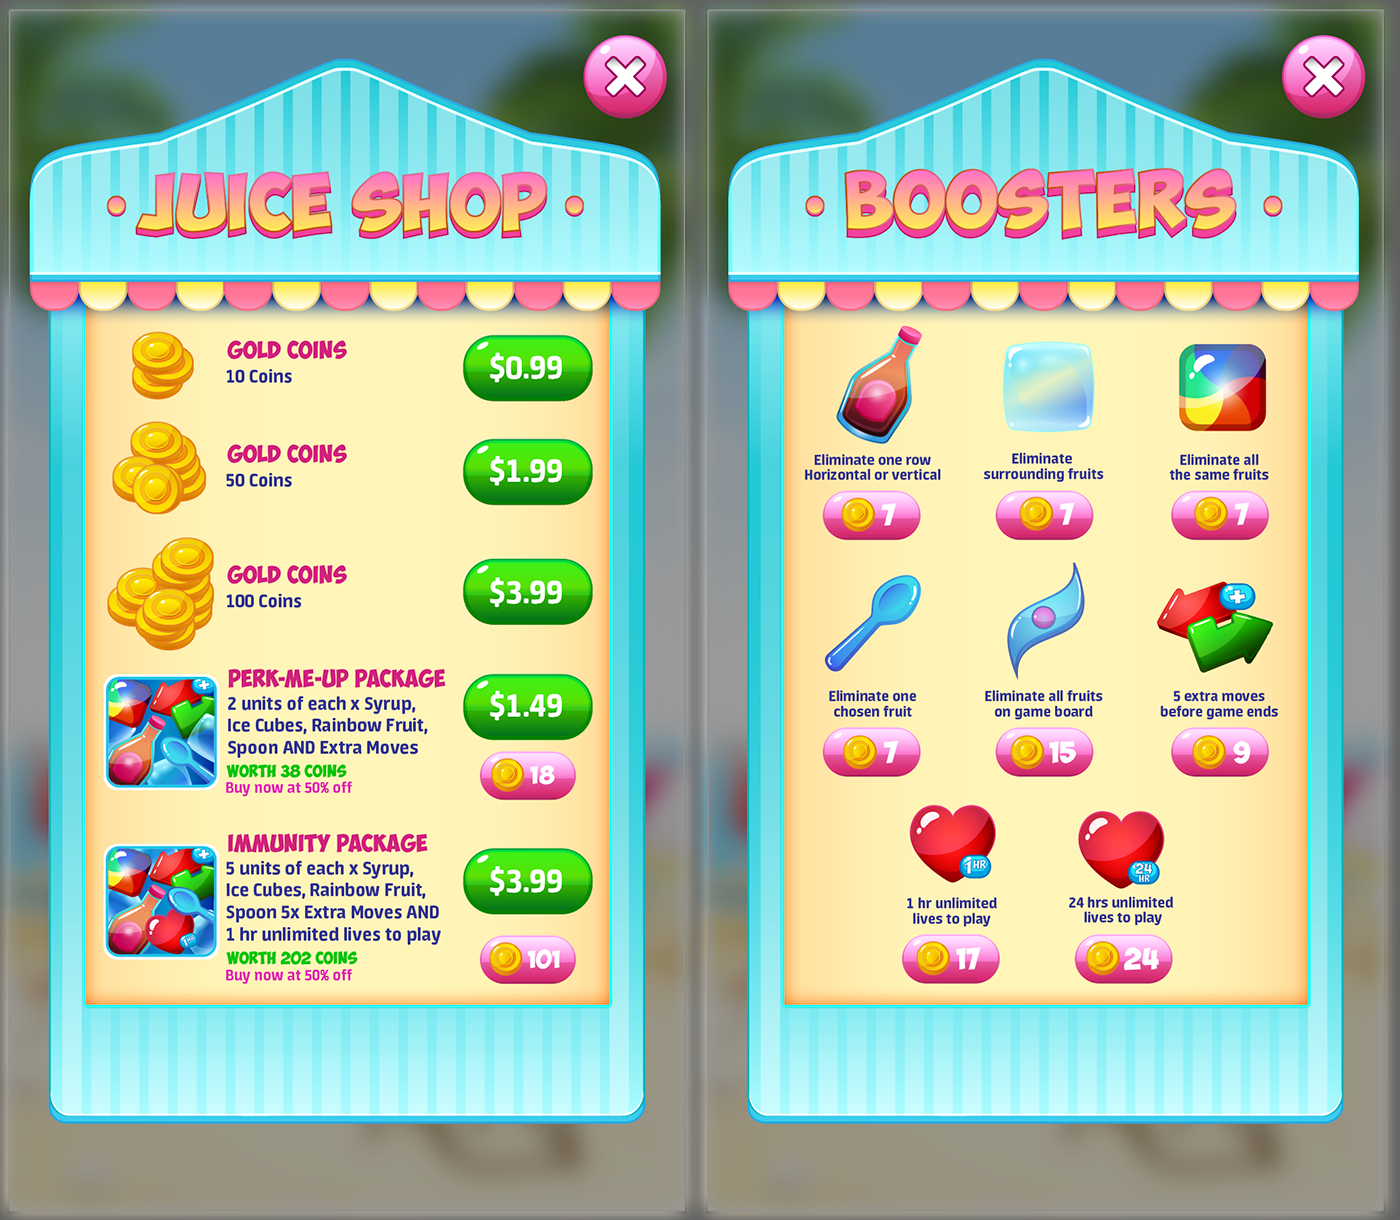 match-3 game match-3 Game Art game design  Fruit fruits Fruit Punch UI game ui Interface